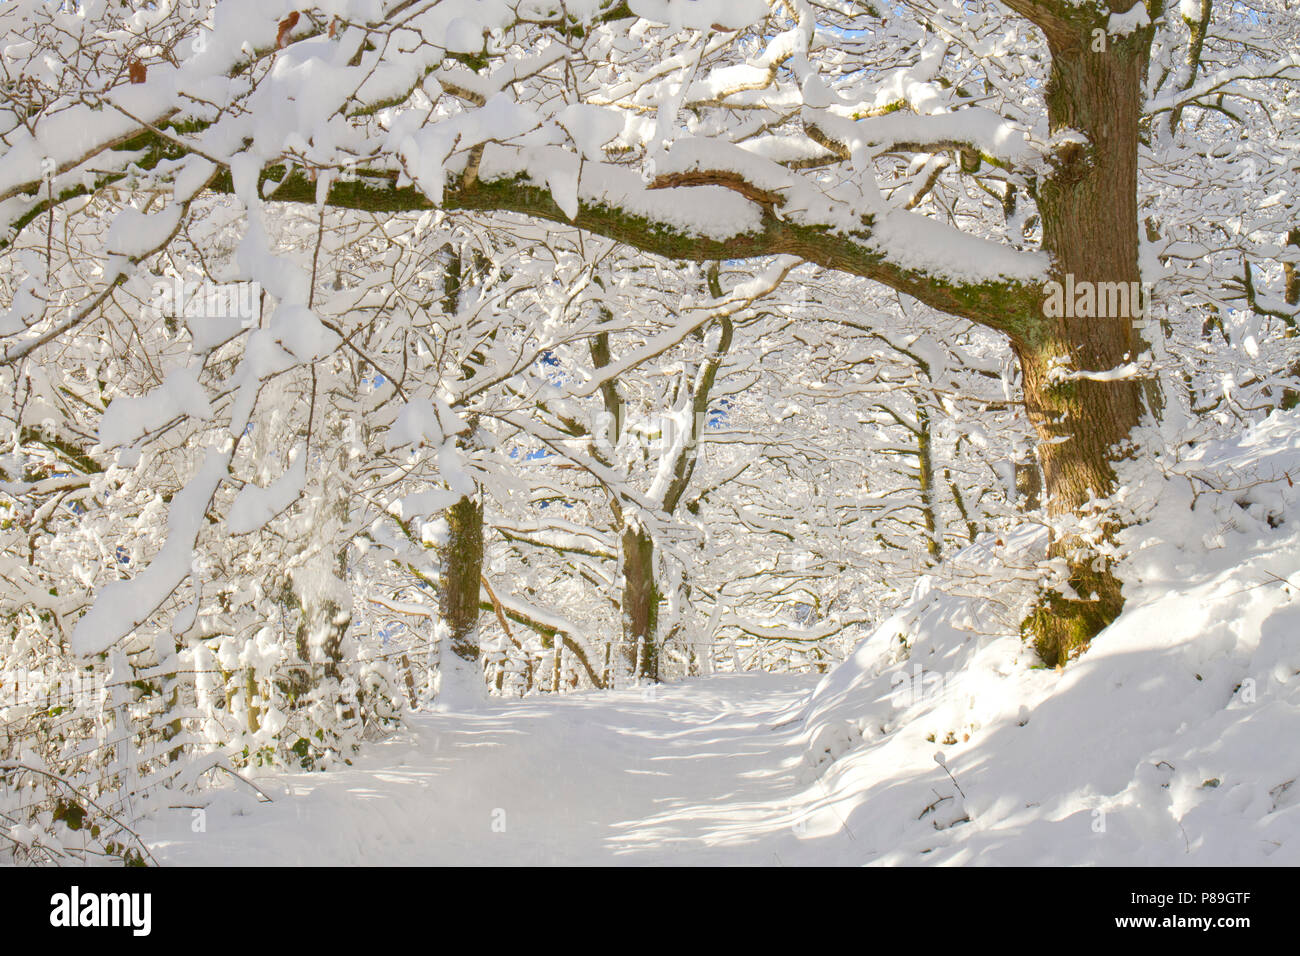 Anschluss über eine Trauben-eiche (Quercus pontica) Woodland nach einem schweren Sturz von Schnee. Powys, Wales. Dezember. Stockfoto